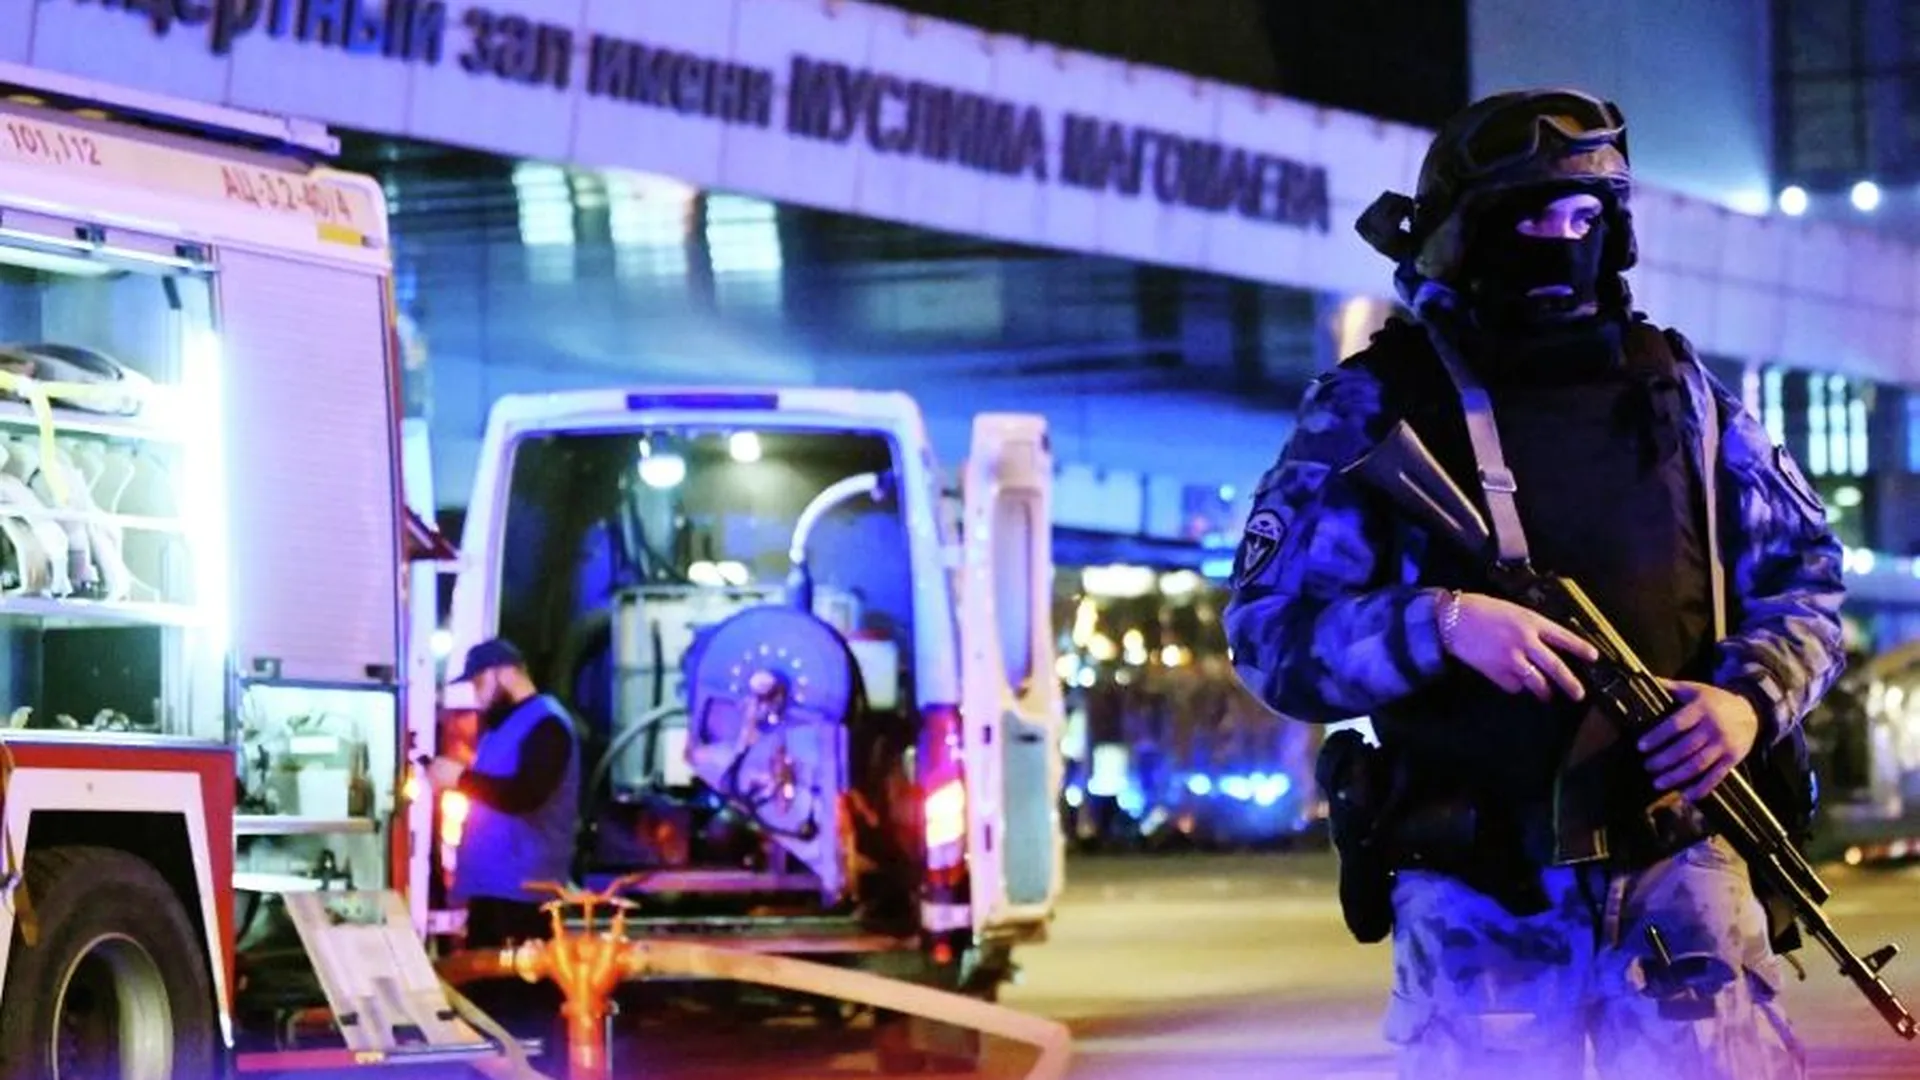 Baza: 18 человек погибли в результате теракта в Crocus City Hall